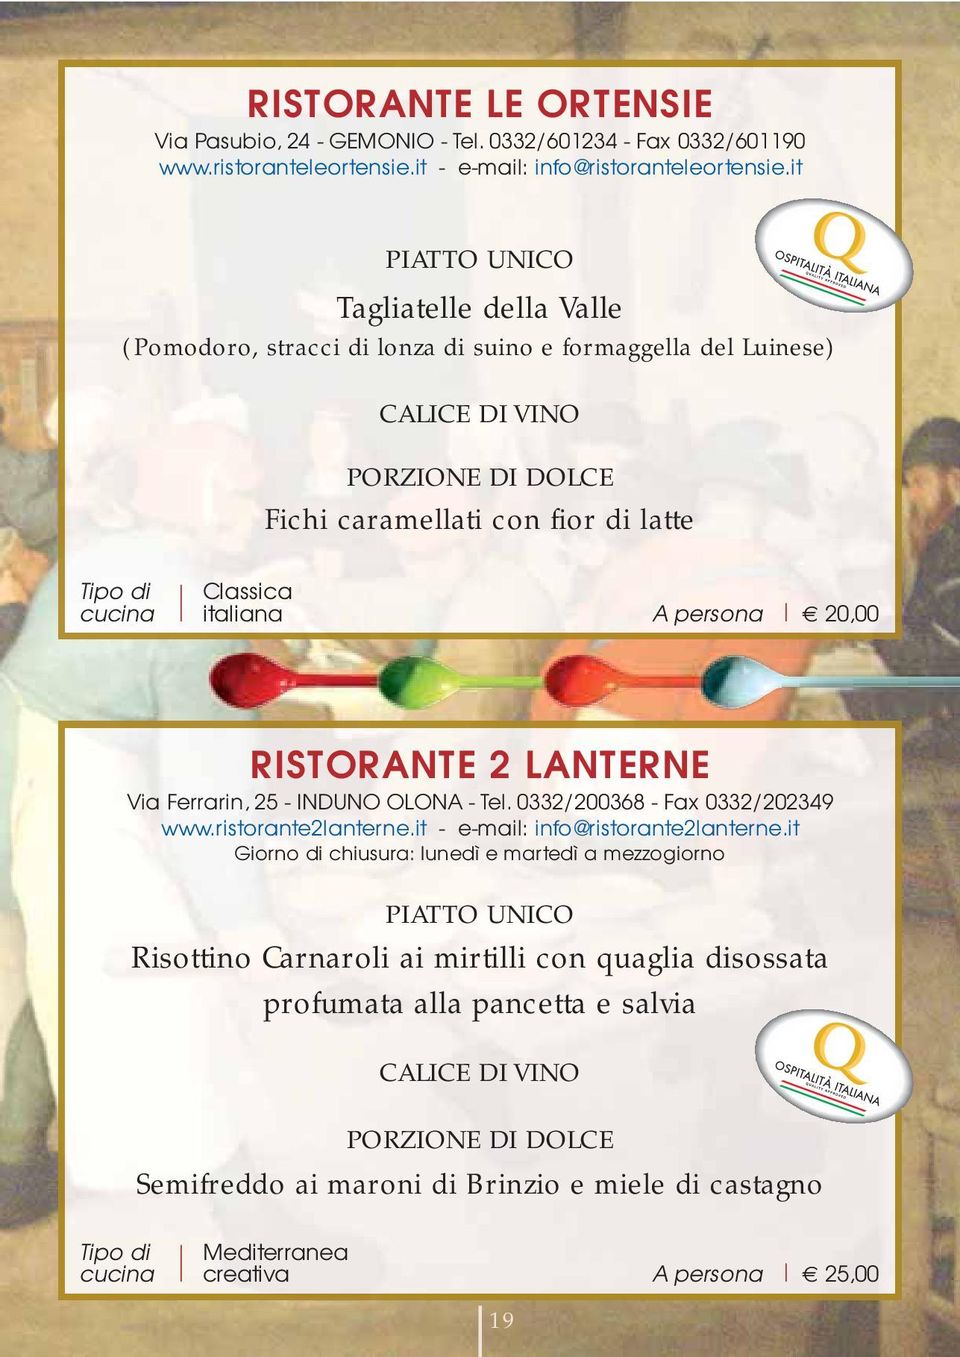 RISTORANTE 2 LANTERNE Via Ferrarin, 25 - INDUNO OLONA - Tel. 0332/200368 - Fax 0332/202349 www.ristorante2lanterne.it - e-mail: info@ristorante2lanterne.